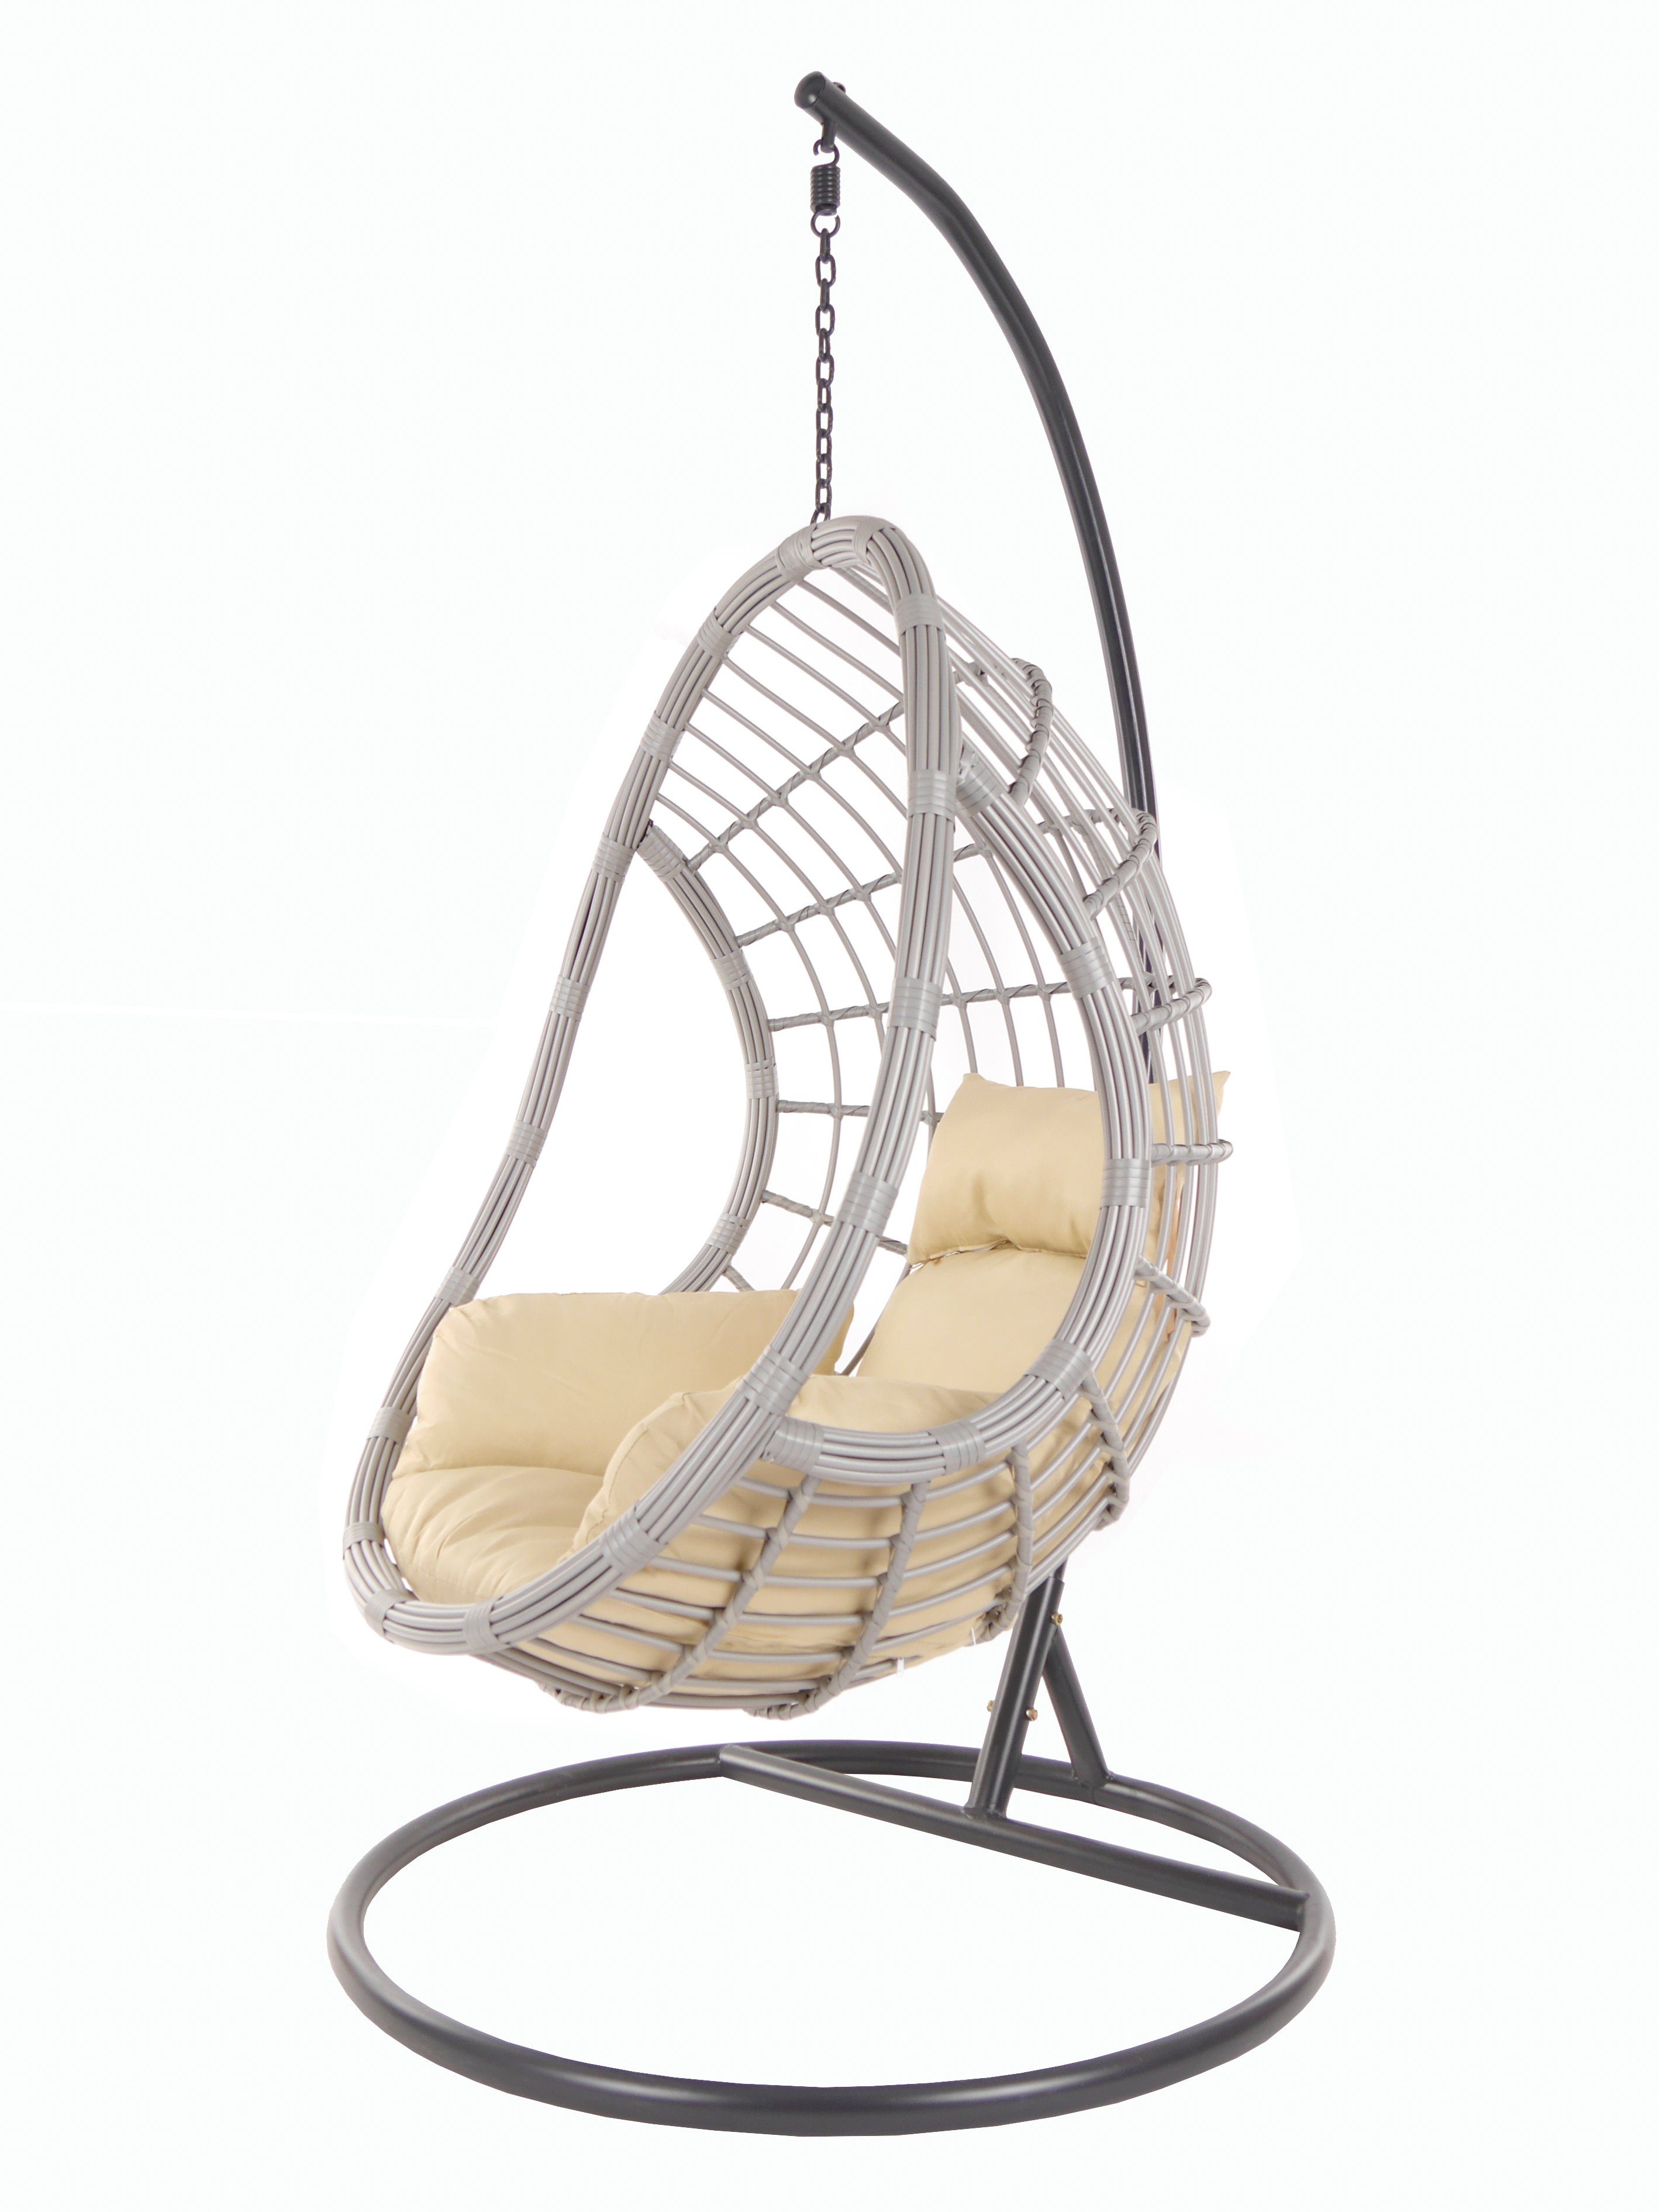 KIDEO Hängesessel PALMANOVA lightgrey, Schwebesessel mit Gestell und Kissen, Swing Chair, Loungemöbel hellbraun (7007 capucchino)